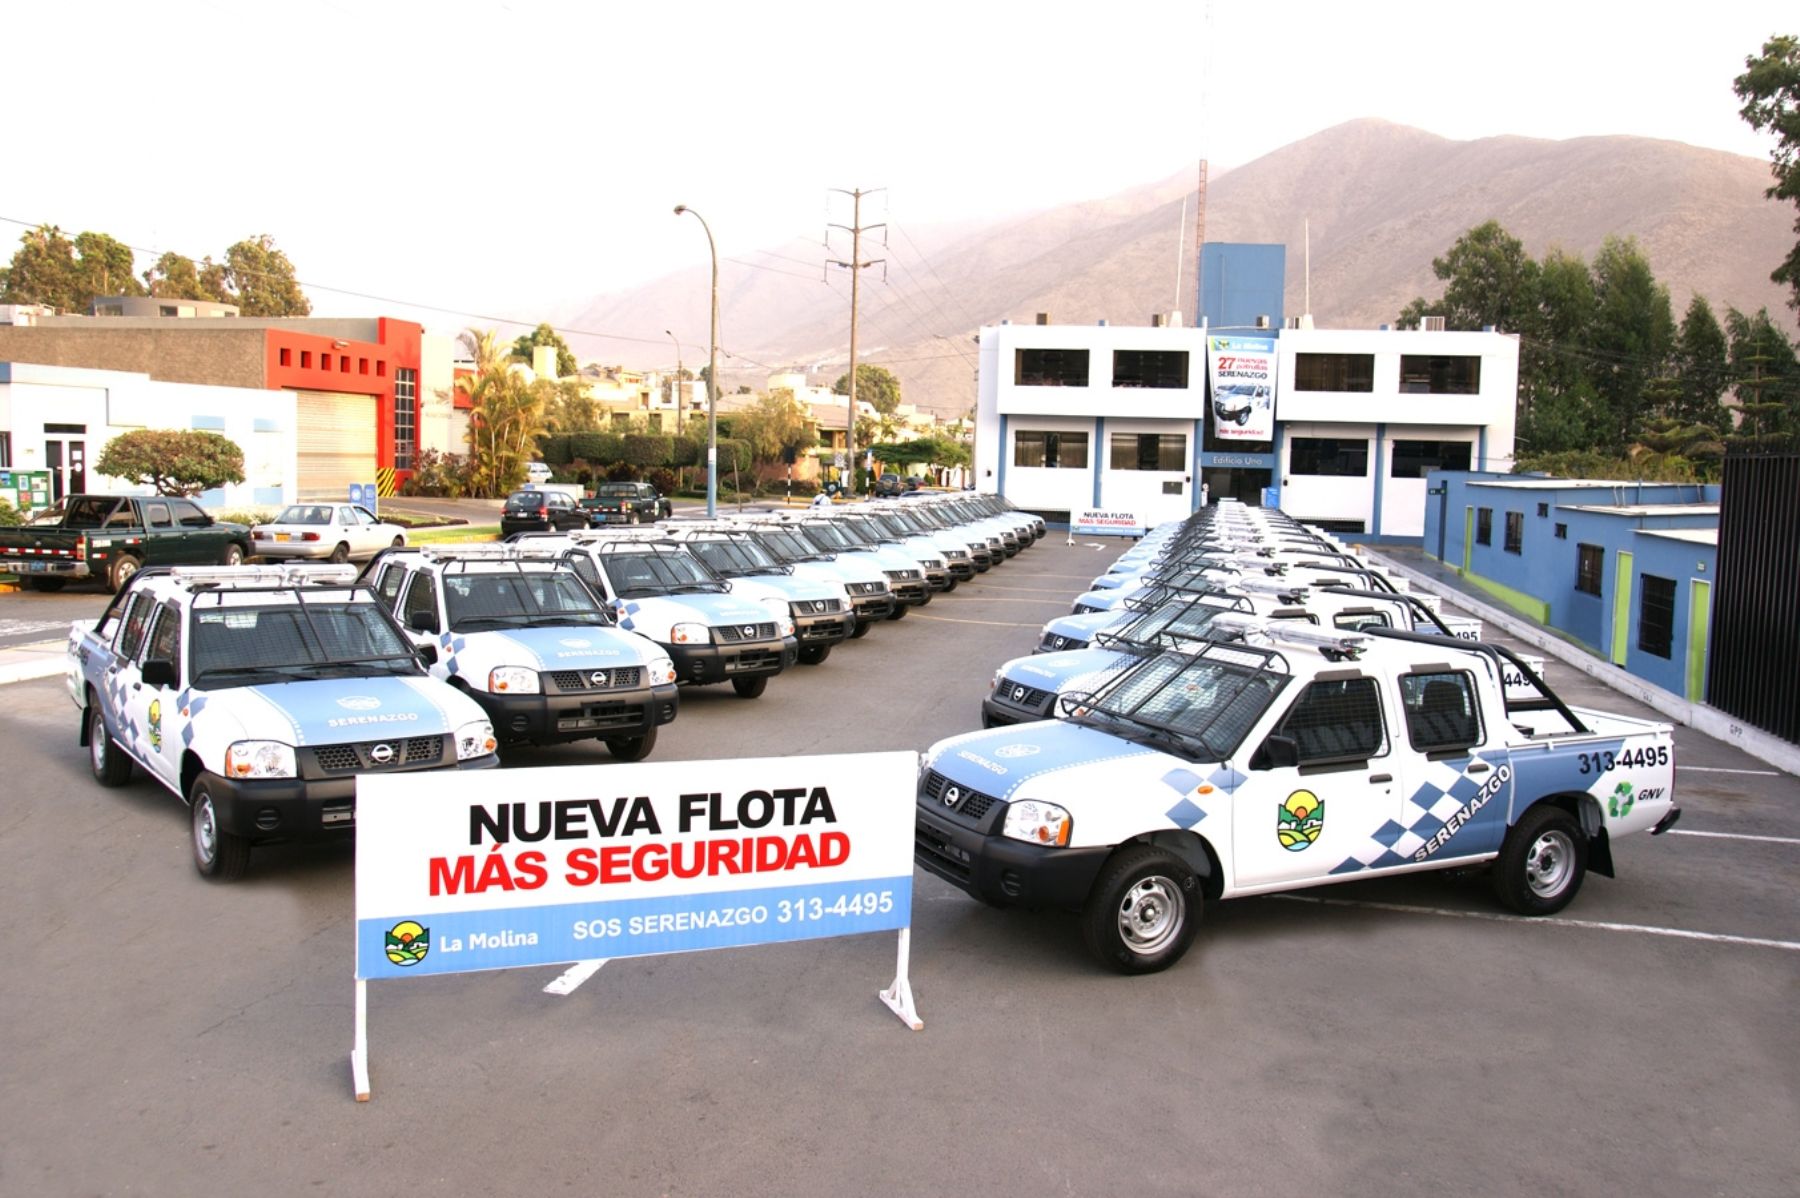 Flota de Serenazgo de La Molina incorporó 27 nuevos vehículos para mejorar seguridad ciudadana en dicho distrito. Foto: Municipio de La Molina.